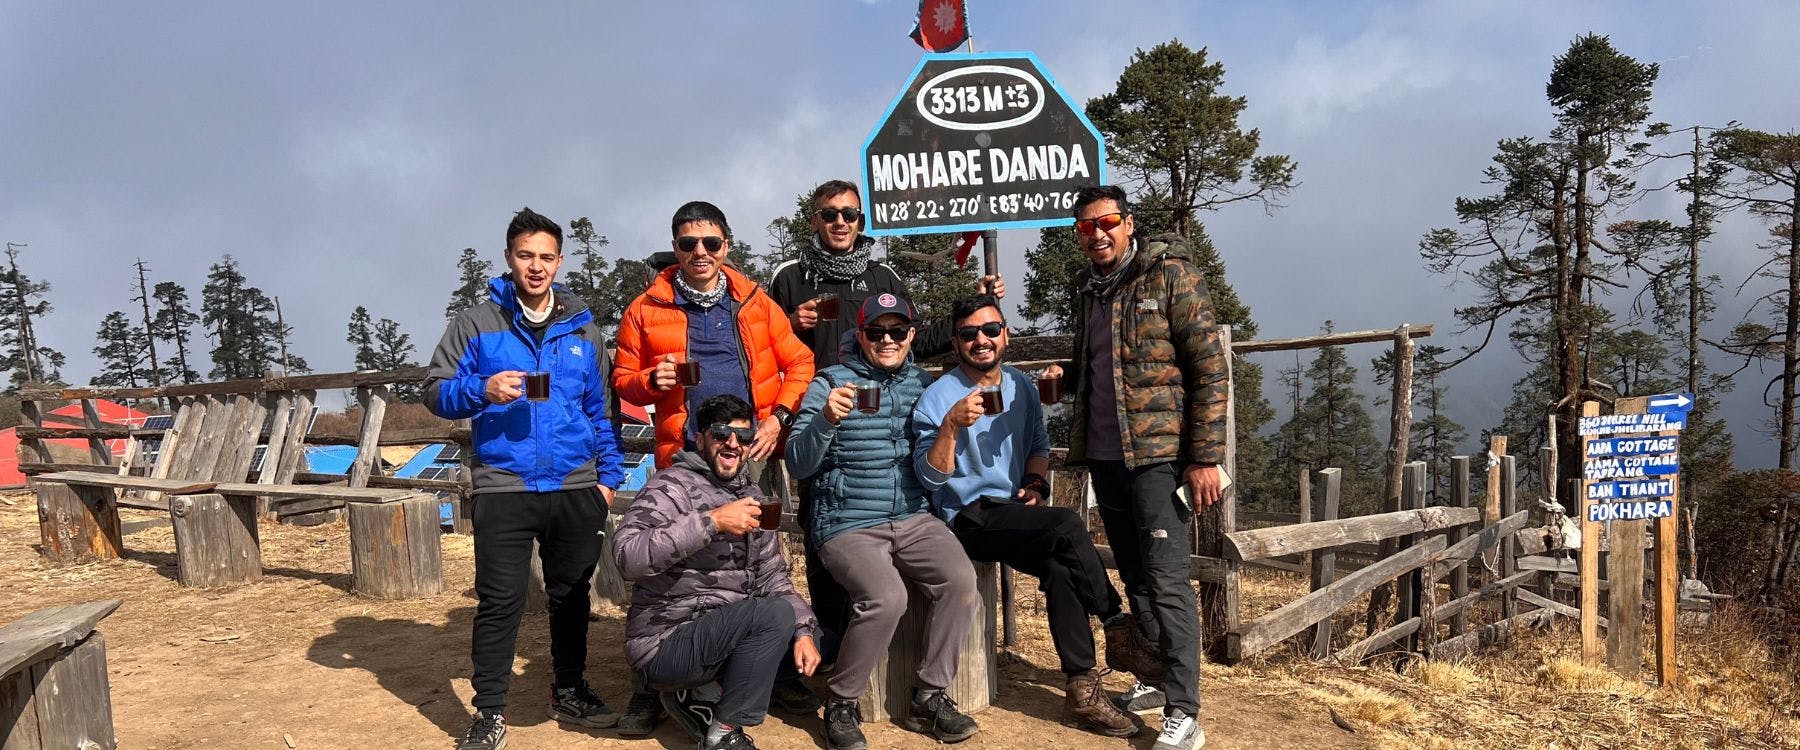 Nepal Hiking Team - Mohare Danda